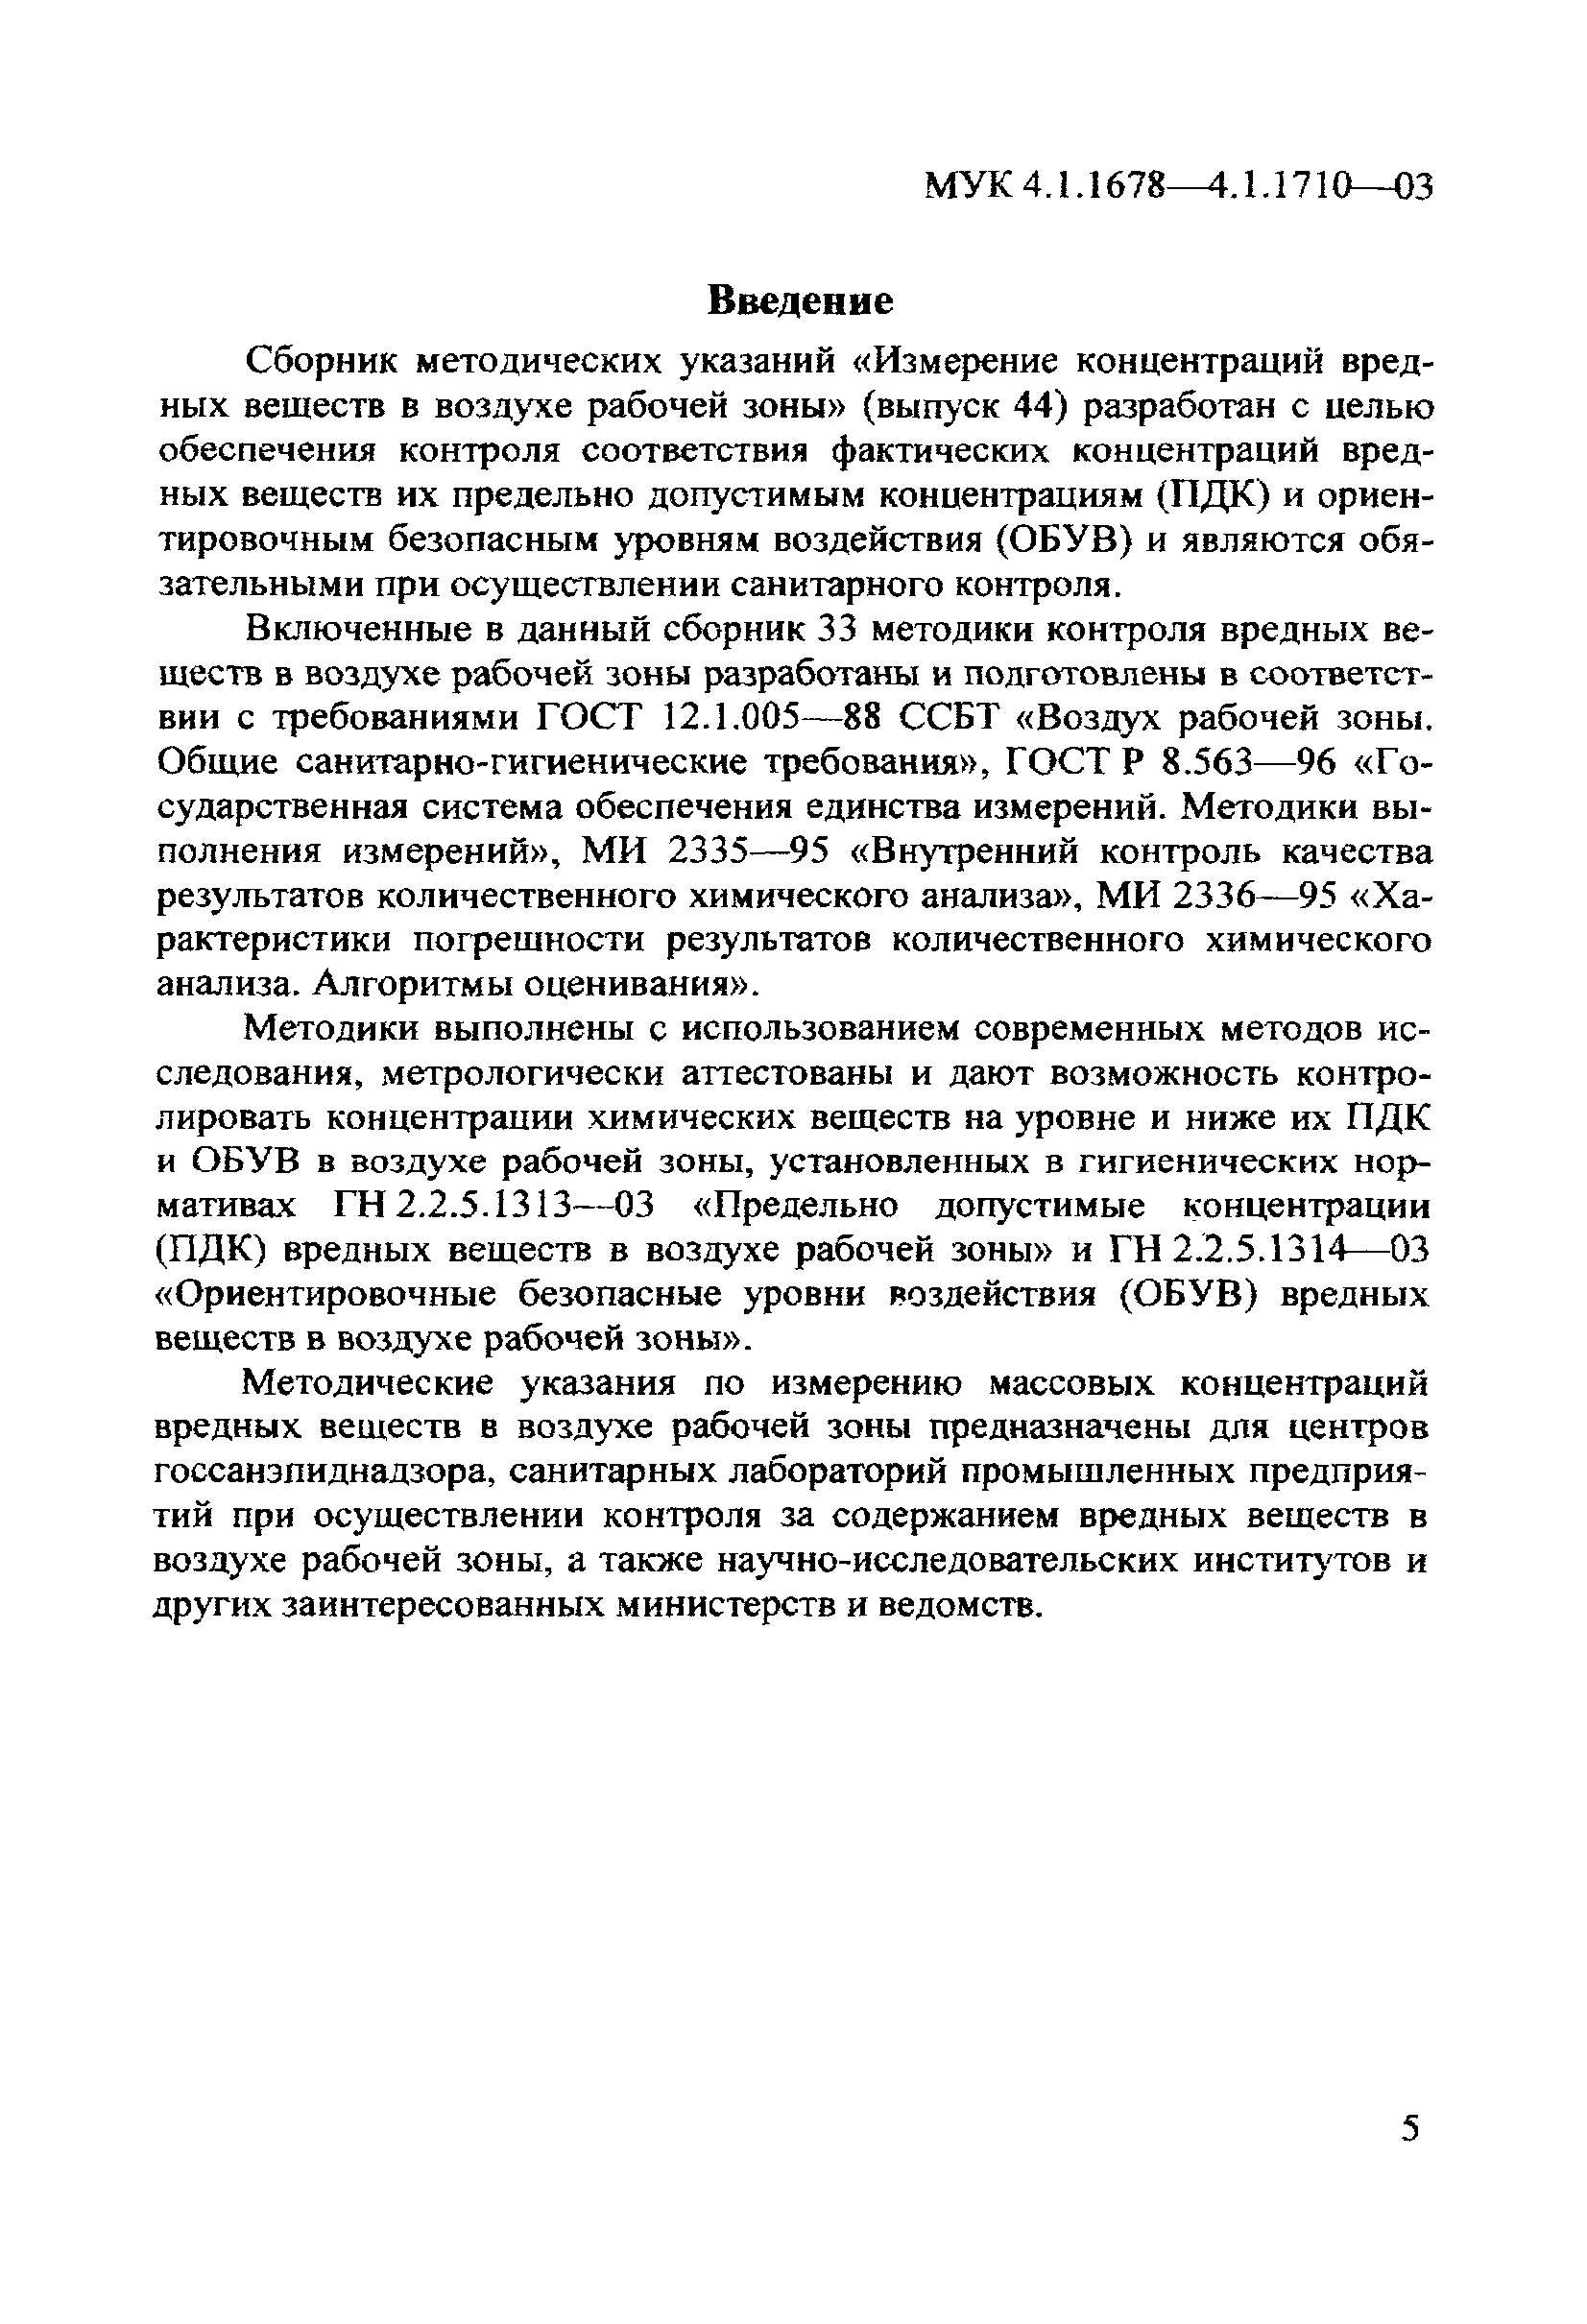 МУК 4.1.1690-03